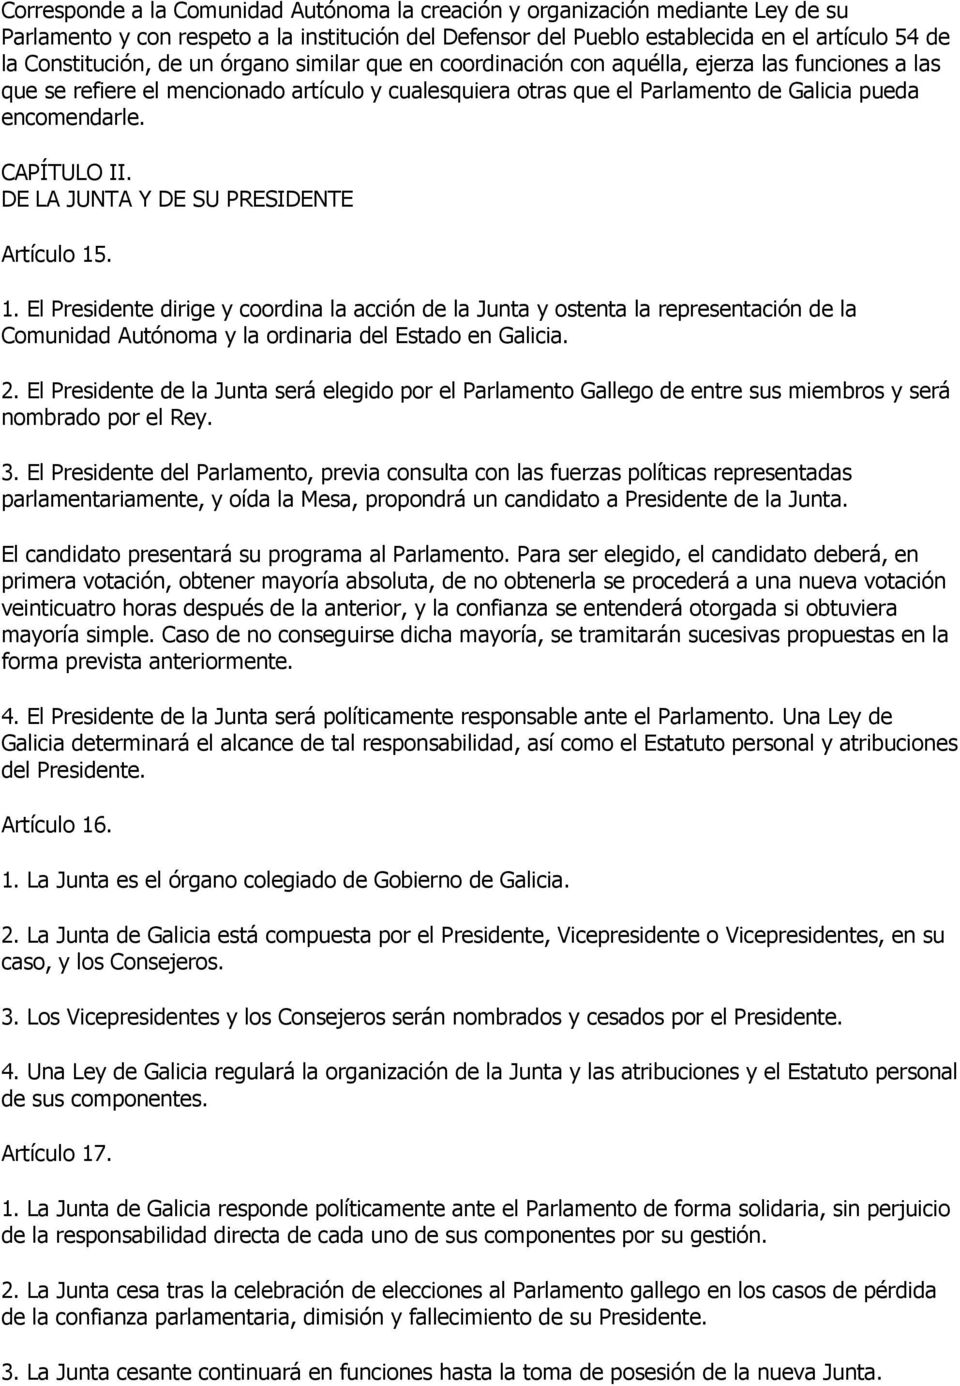 CAPÍTULO II. DE LA JUNTA Y DE SU PRESIDENTE Artículo 15. 1. El Presidente dirige y coordina la acción de la Junta y ostenta la representación de la Comunidad Autónoma y la ordinaria del Estado en Galicia.